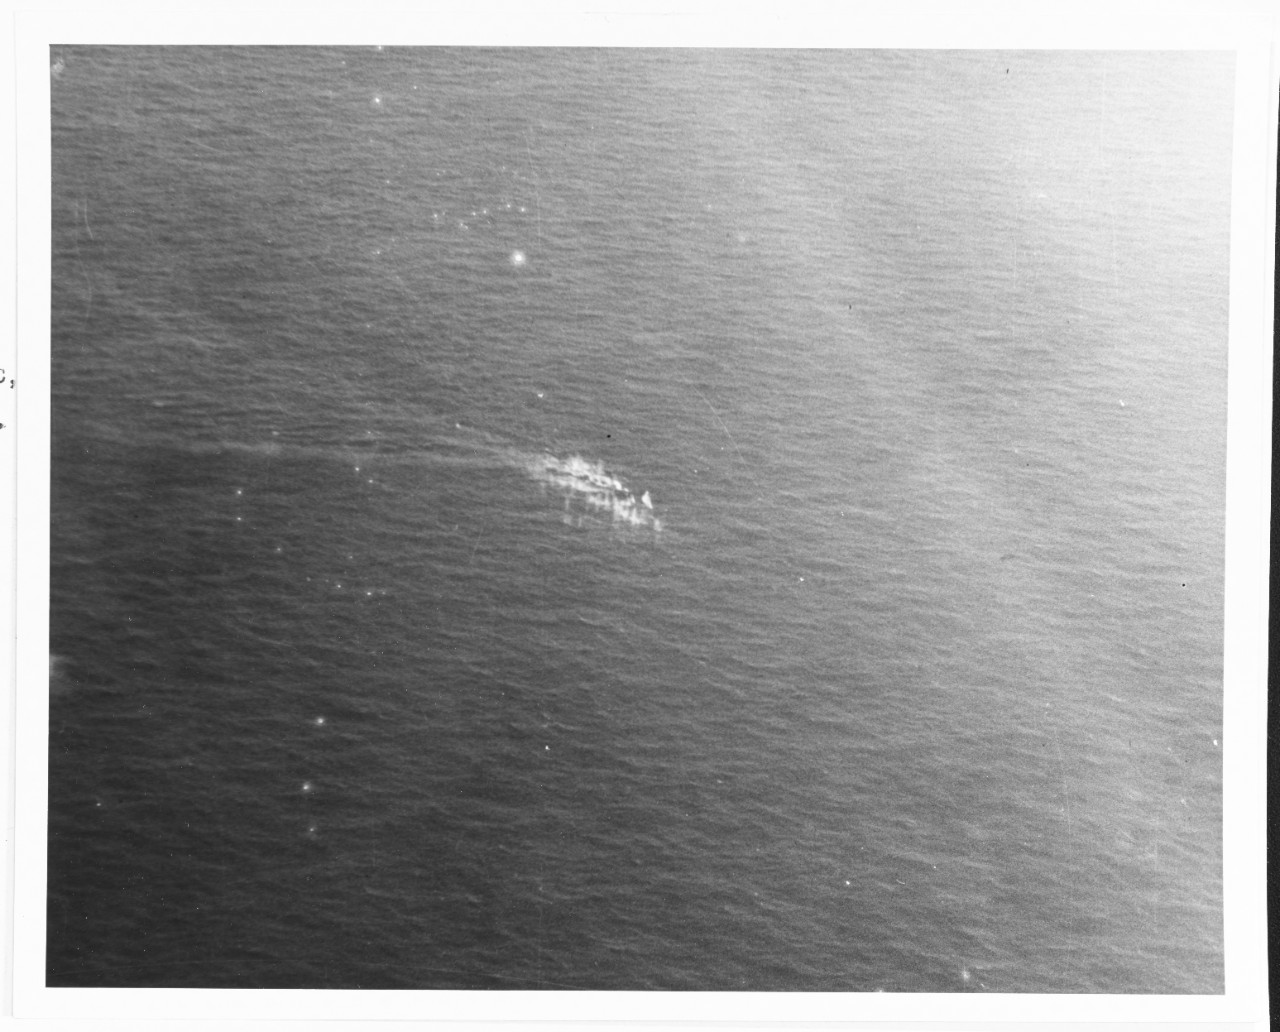 Sinking of U-185, 24 August 1943